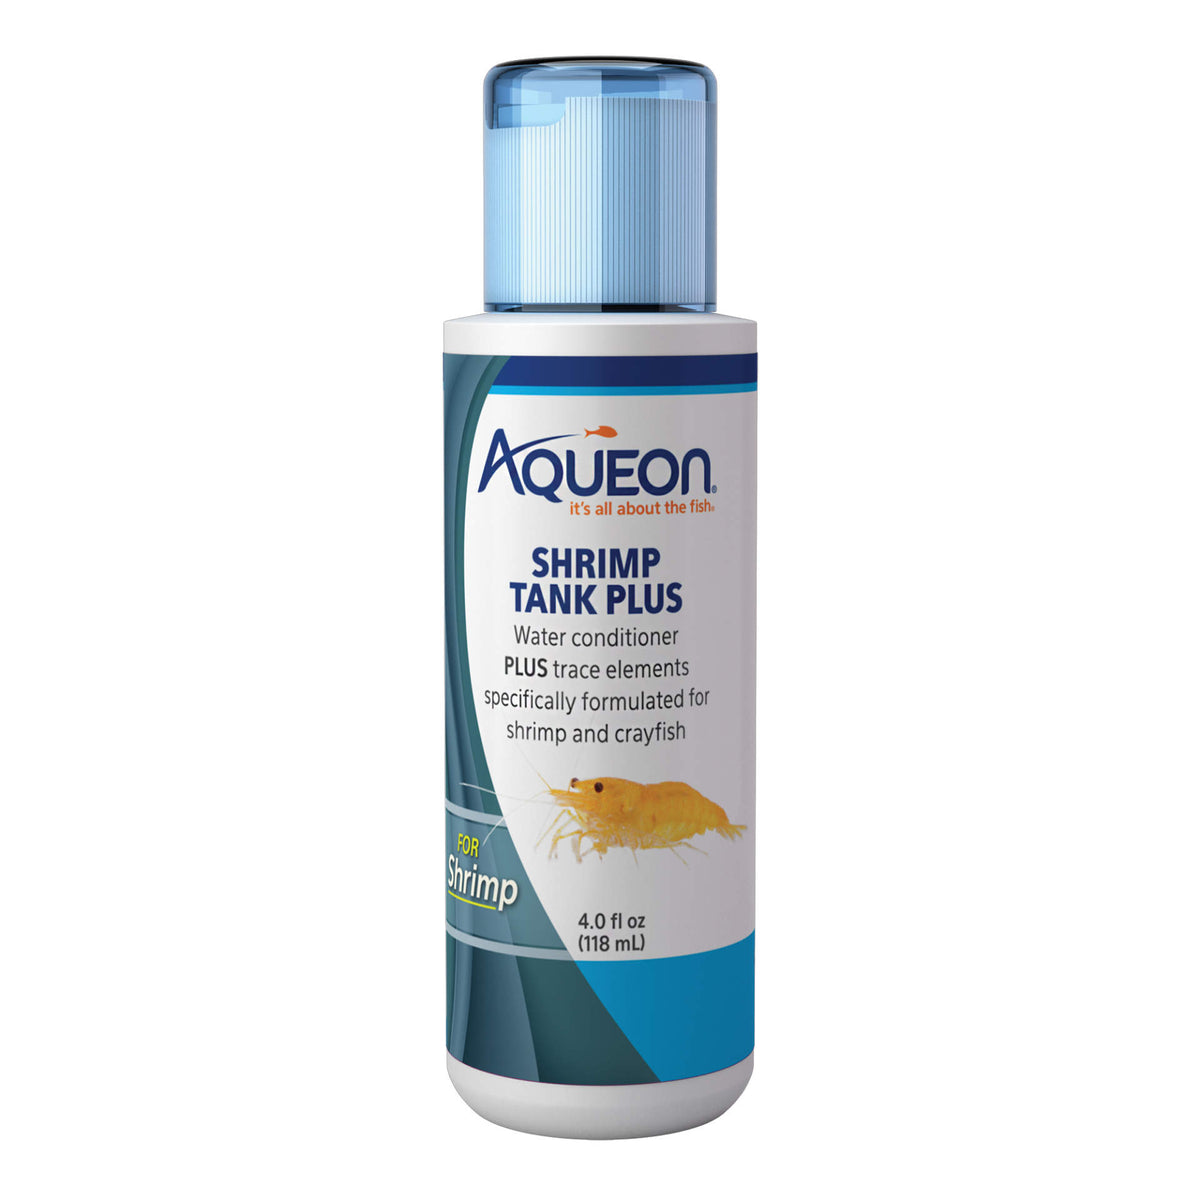 Aqueon - Shrimp Tank Plus Water Conditioner